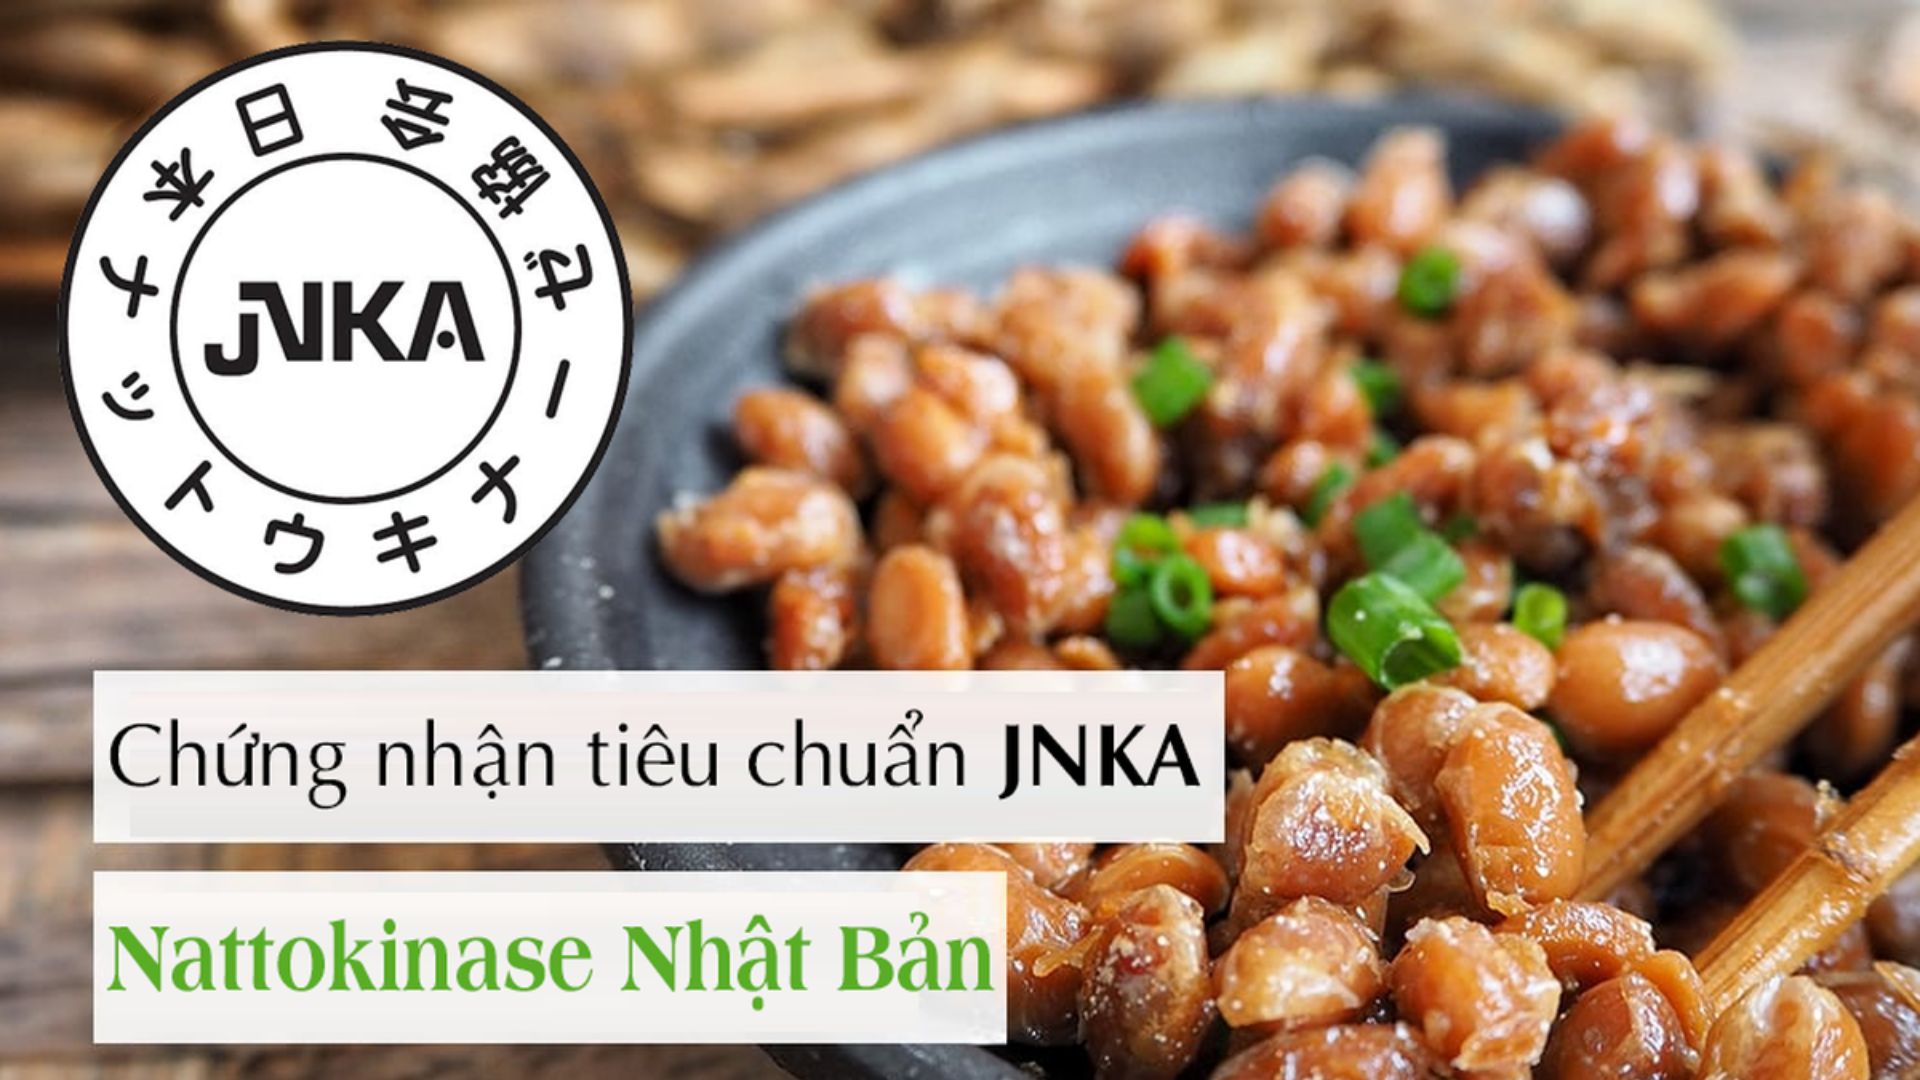 JNKA - logo nhận diện sản phẩm hỗ trợ phòng ngừa đột quỵ chứa nattokinase